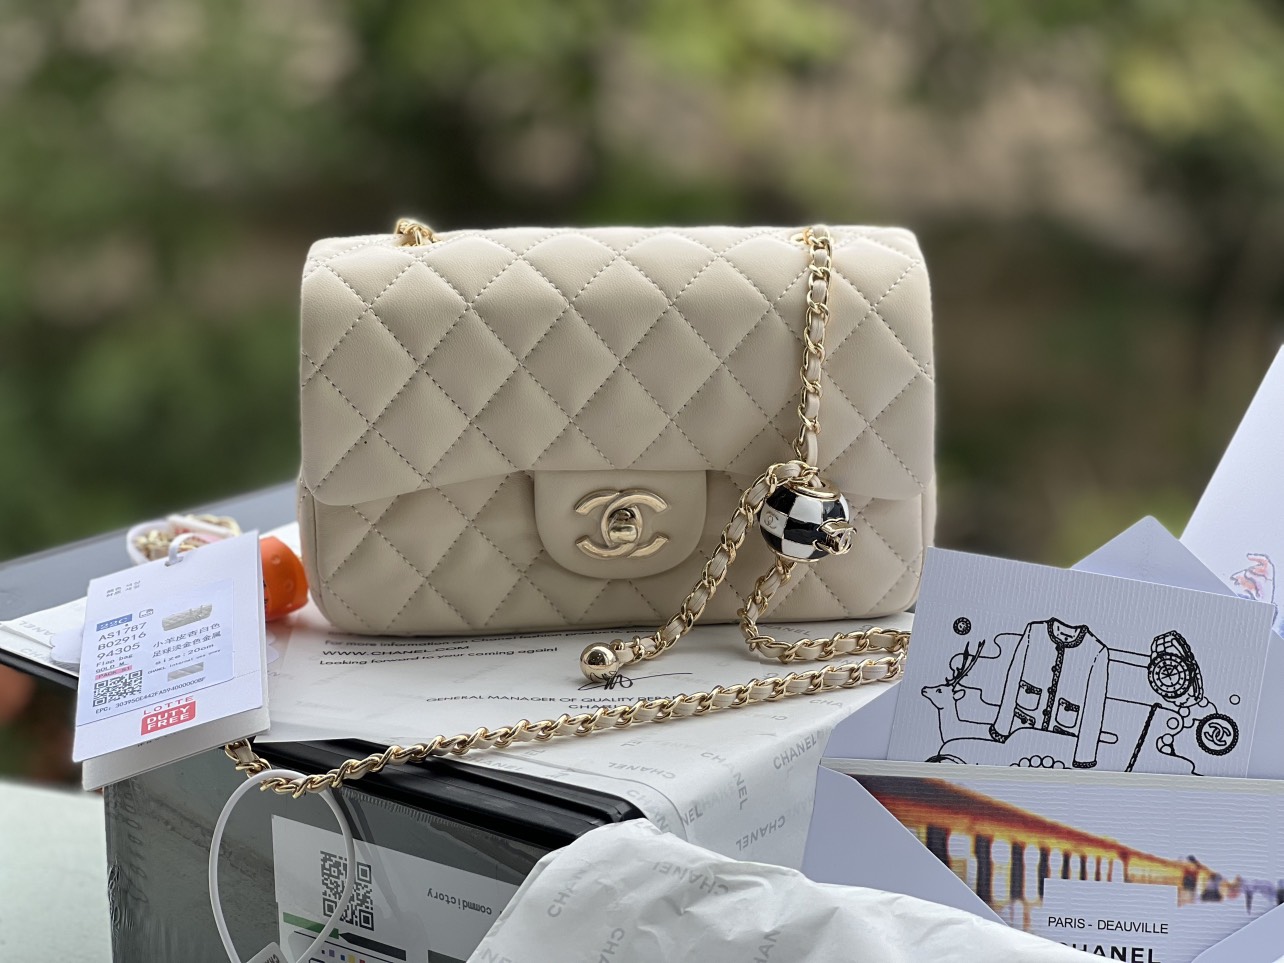 Túi xách da nữ chính hãng Chanel 8 Flap Bag quả cầu vàng giá rẻ